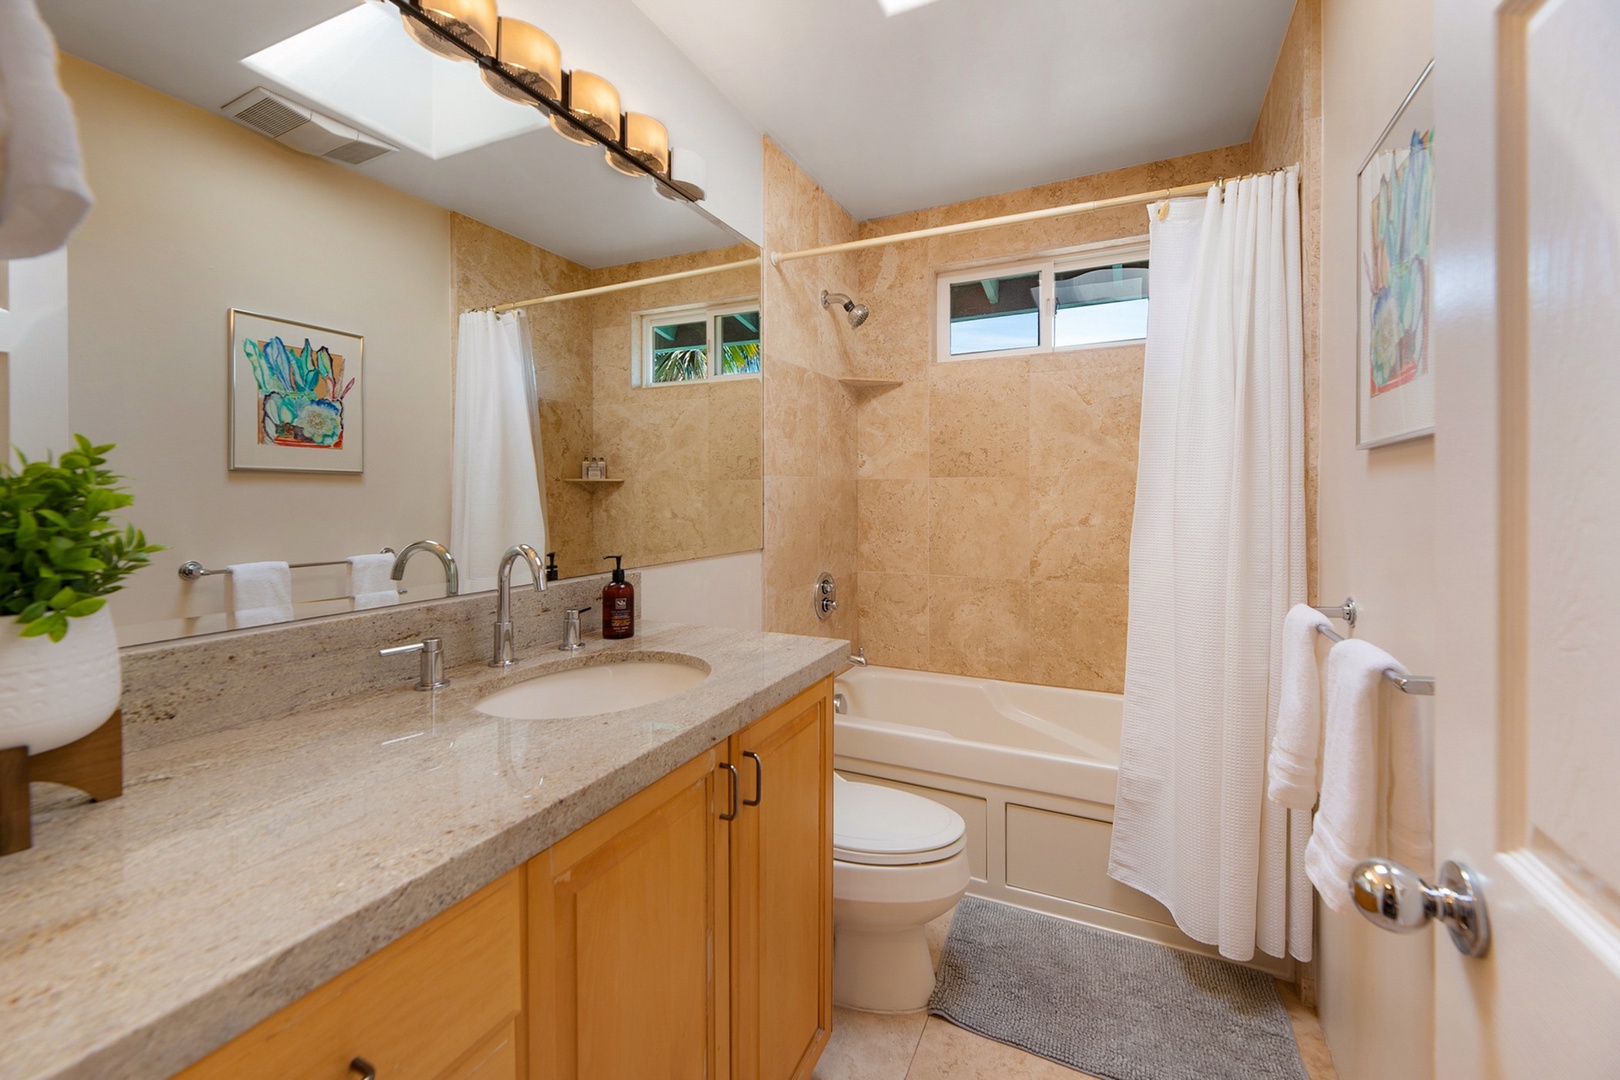 Hallway bathroom with tub shower